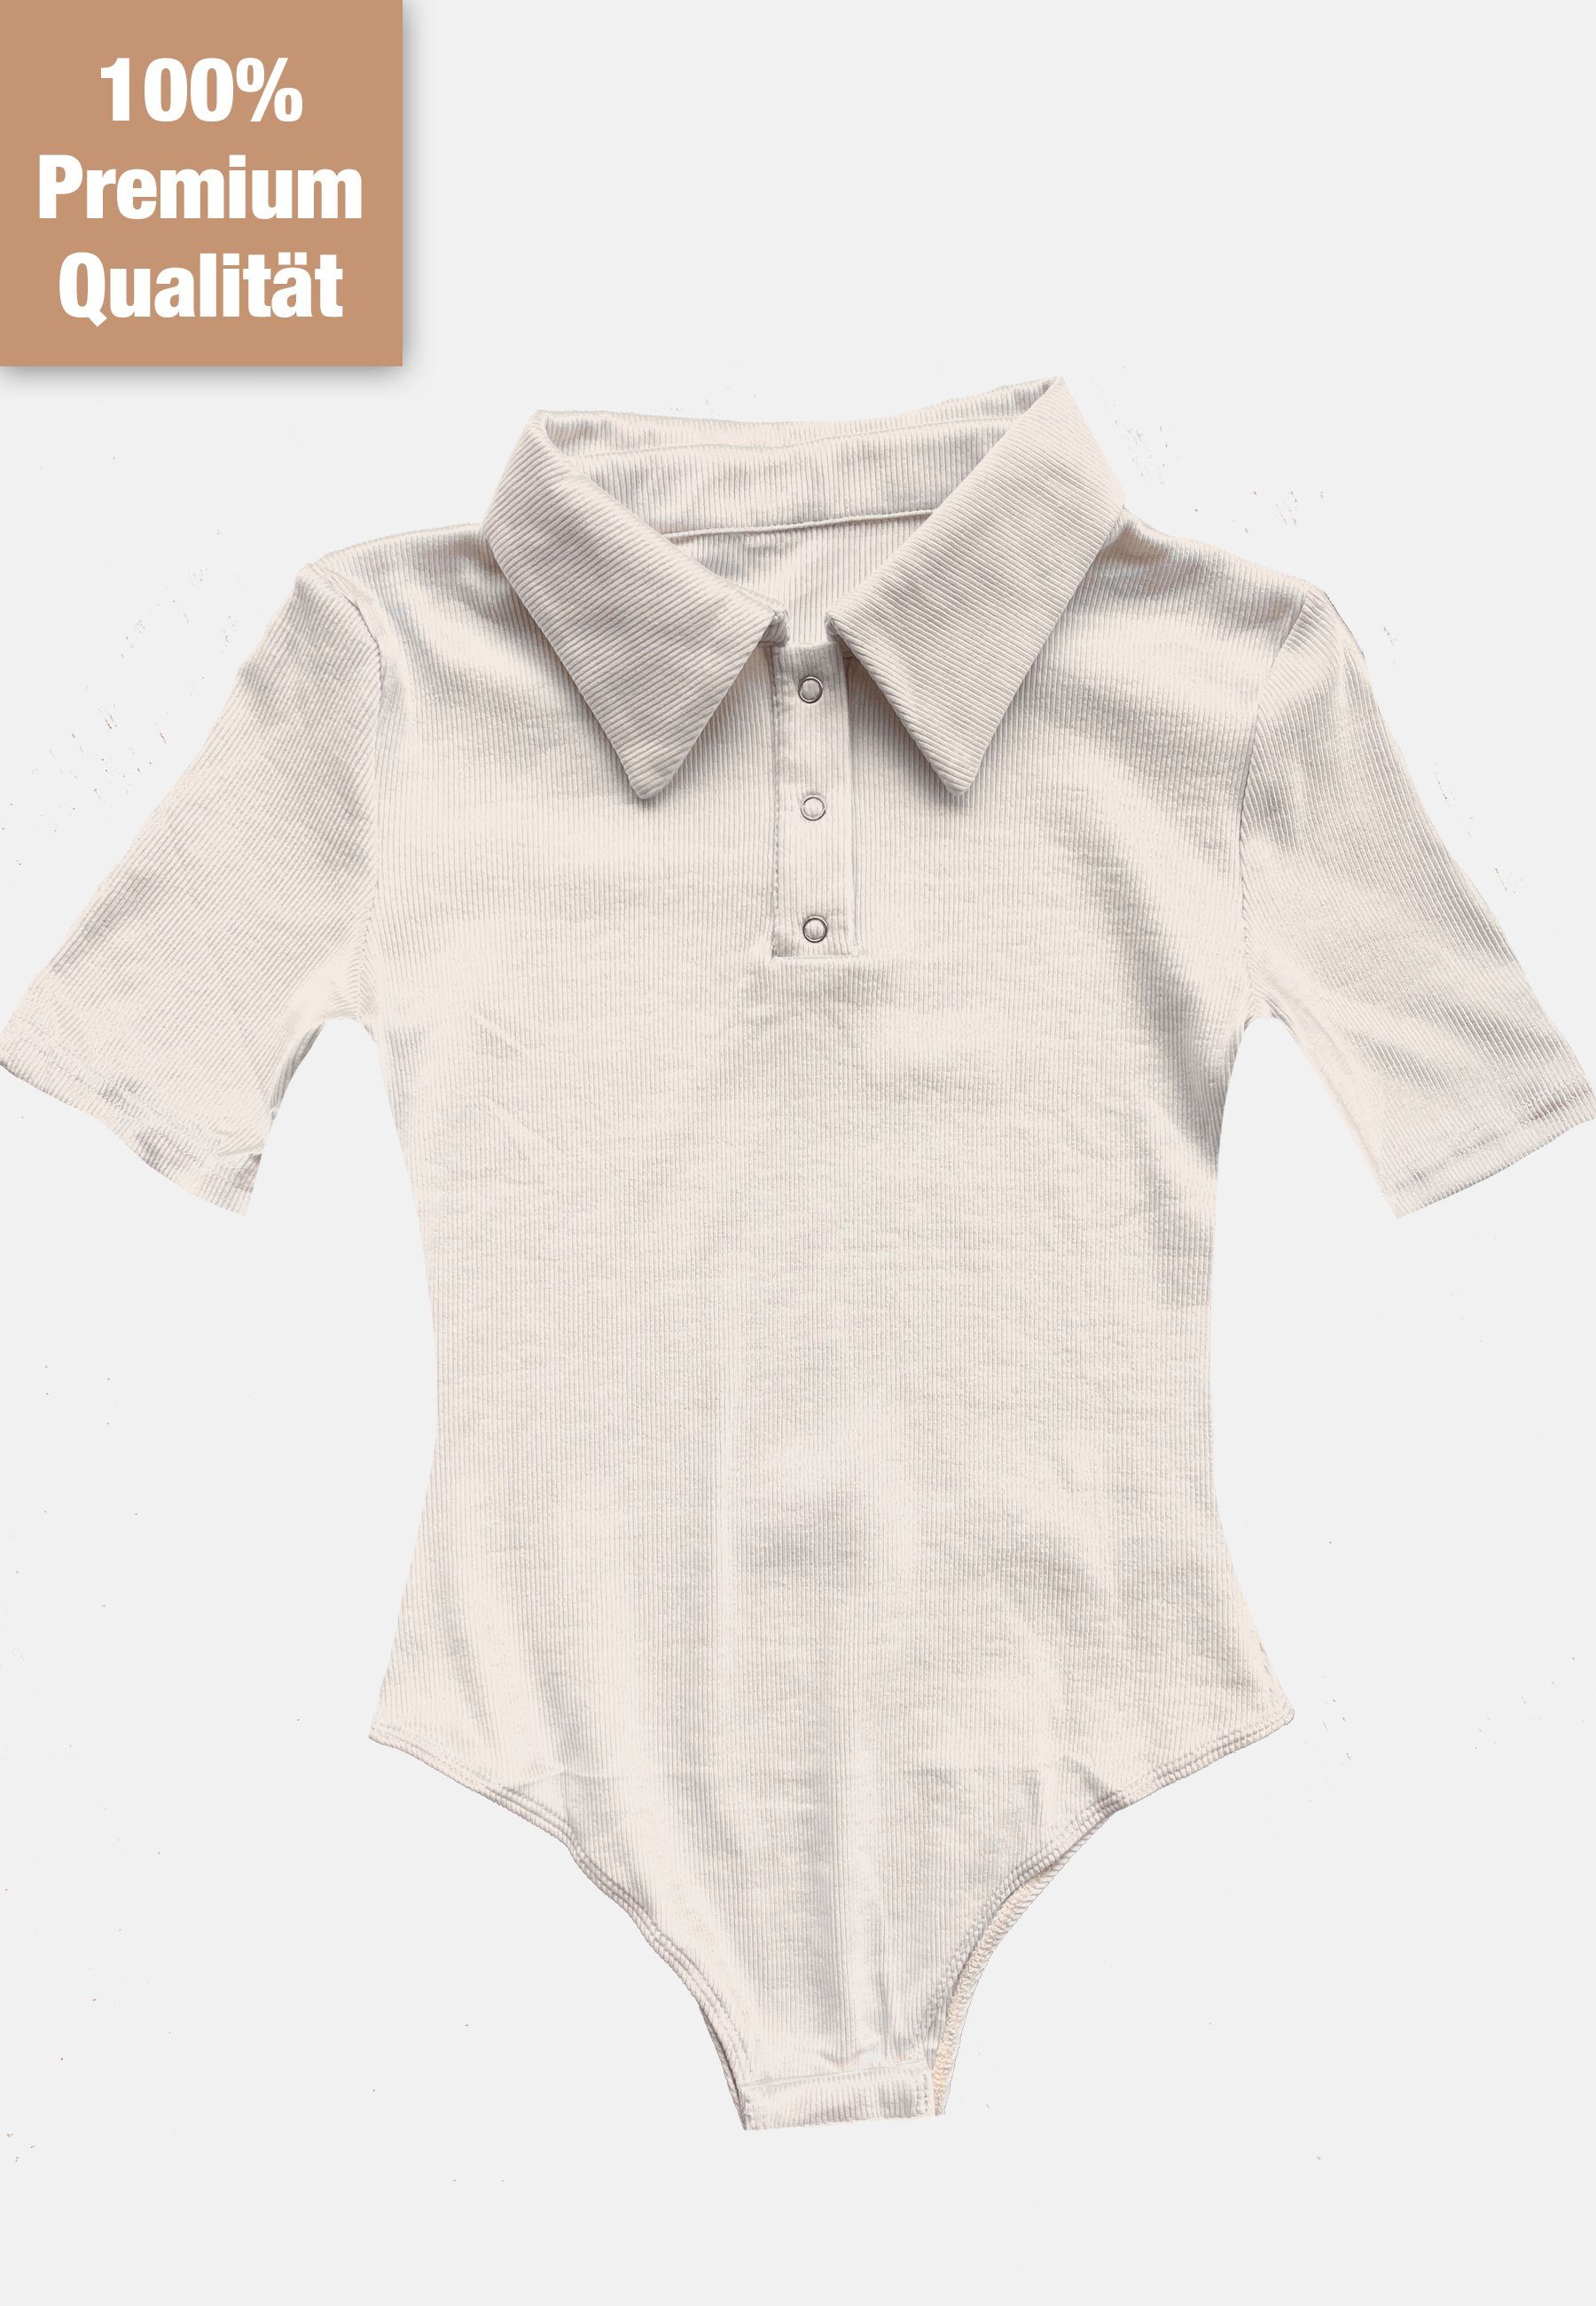 Topseller Kurzarmbody Body Druckknöpfen mit Beige #1 Kurzarm Premium Shirt